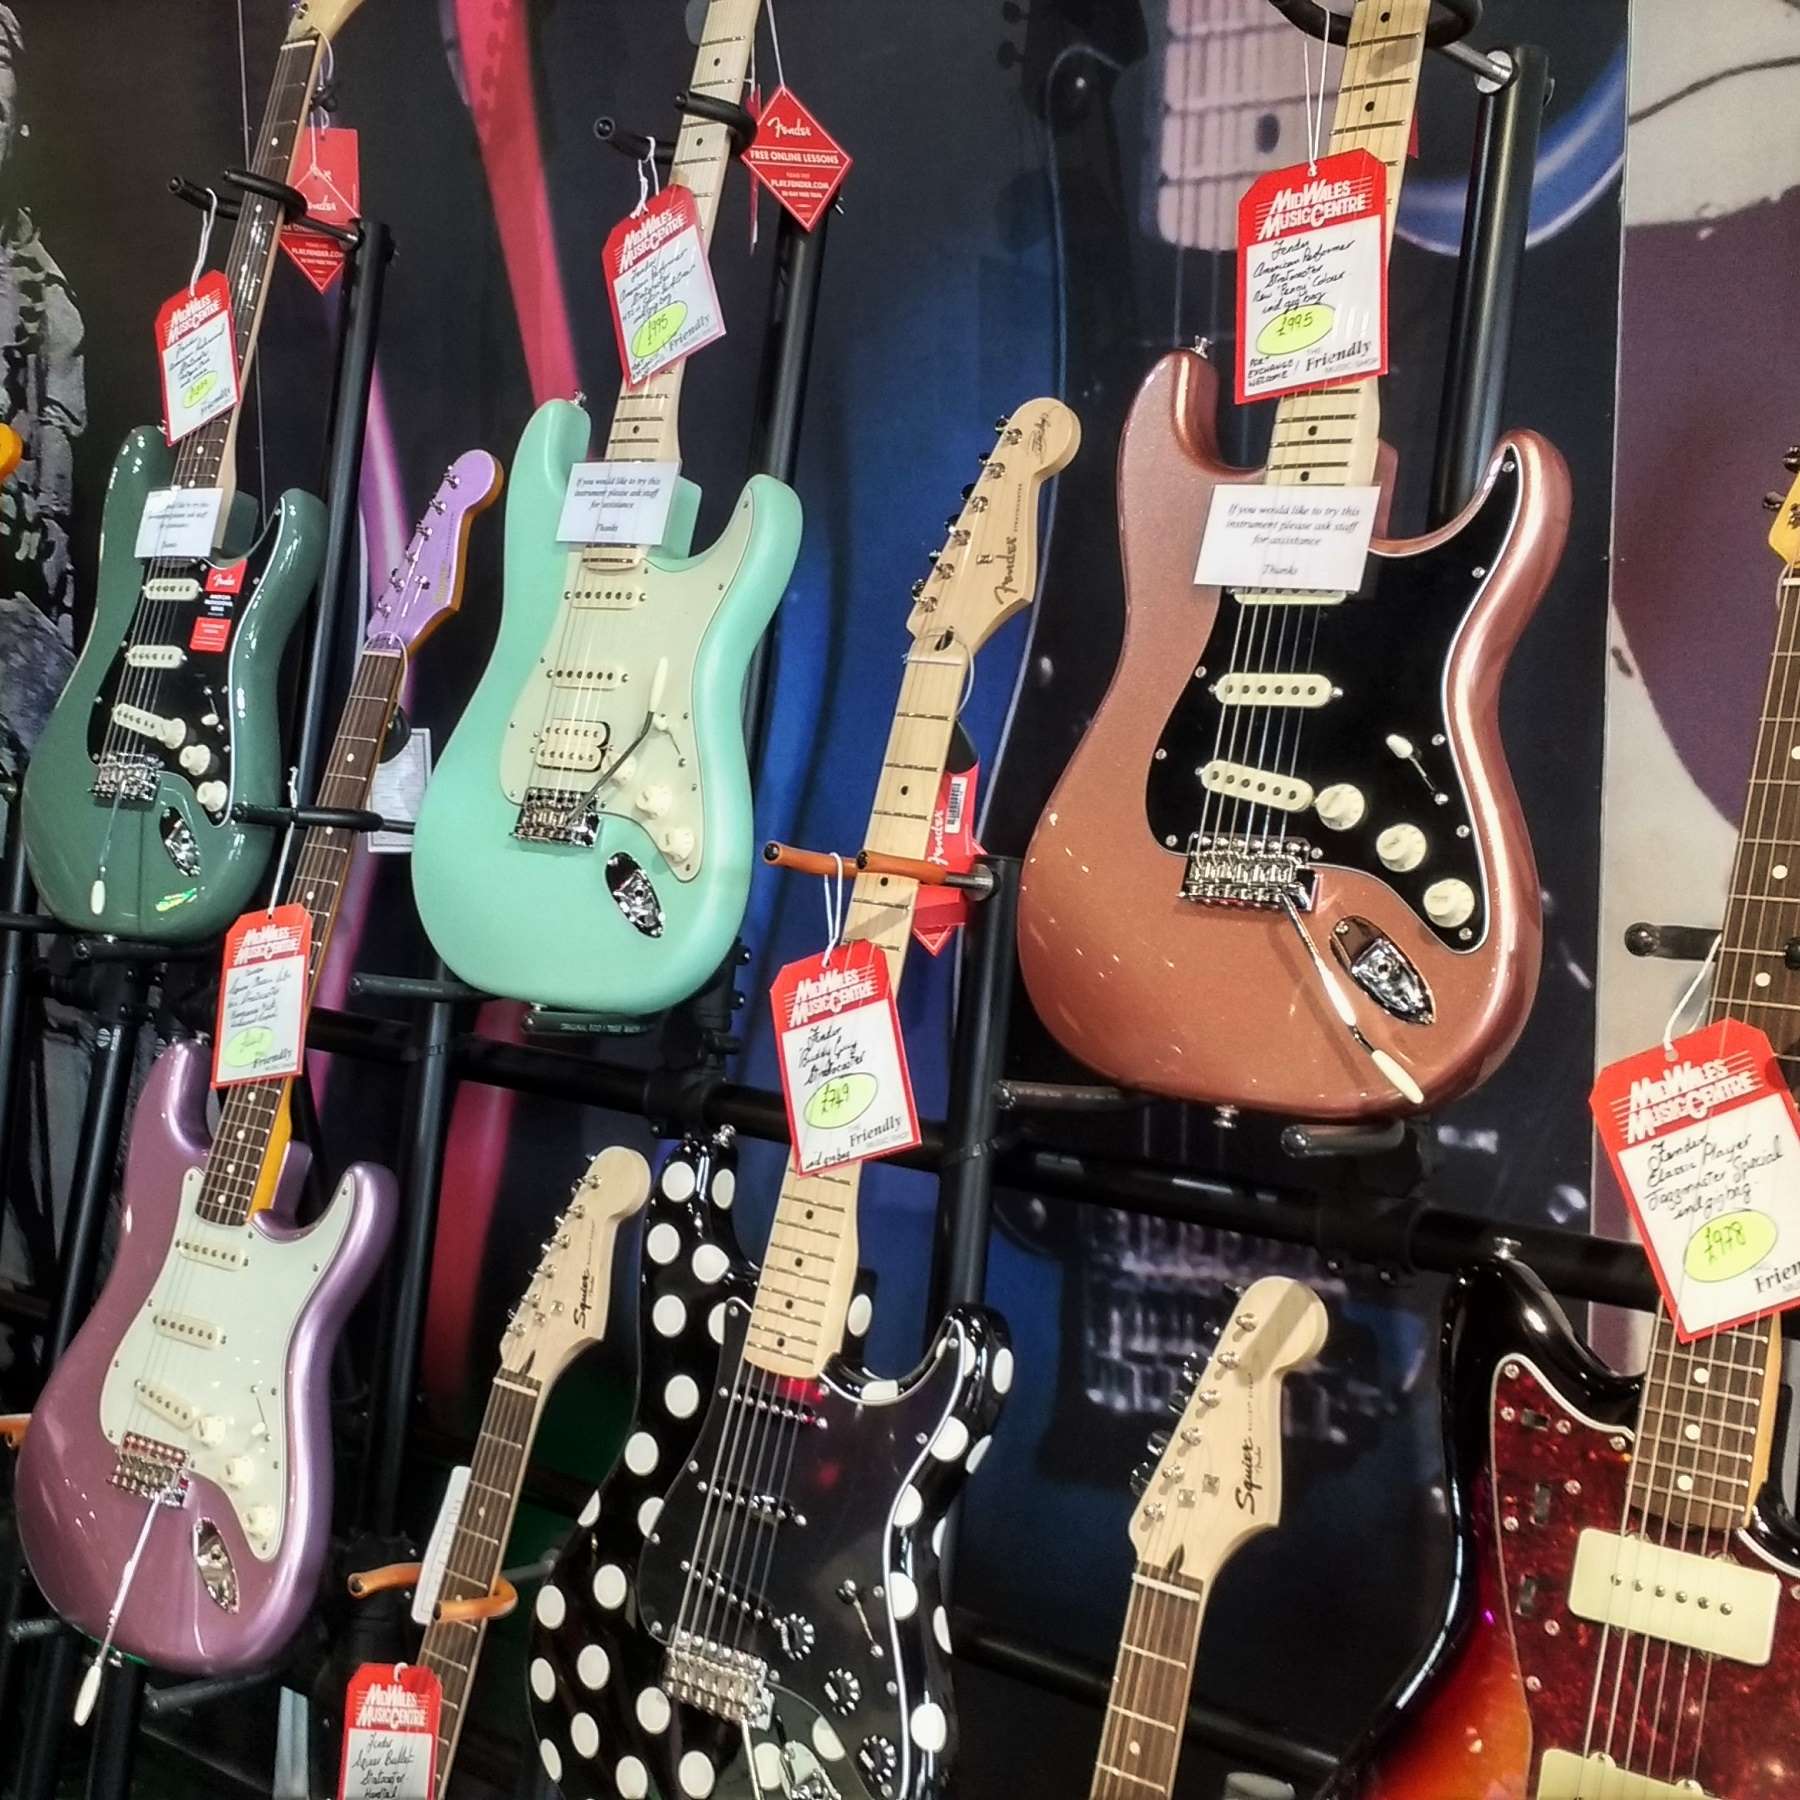 Fender guitars